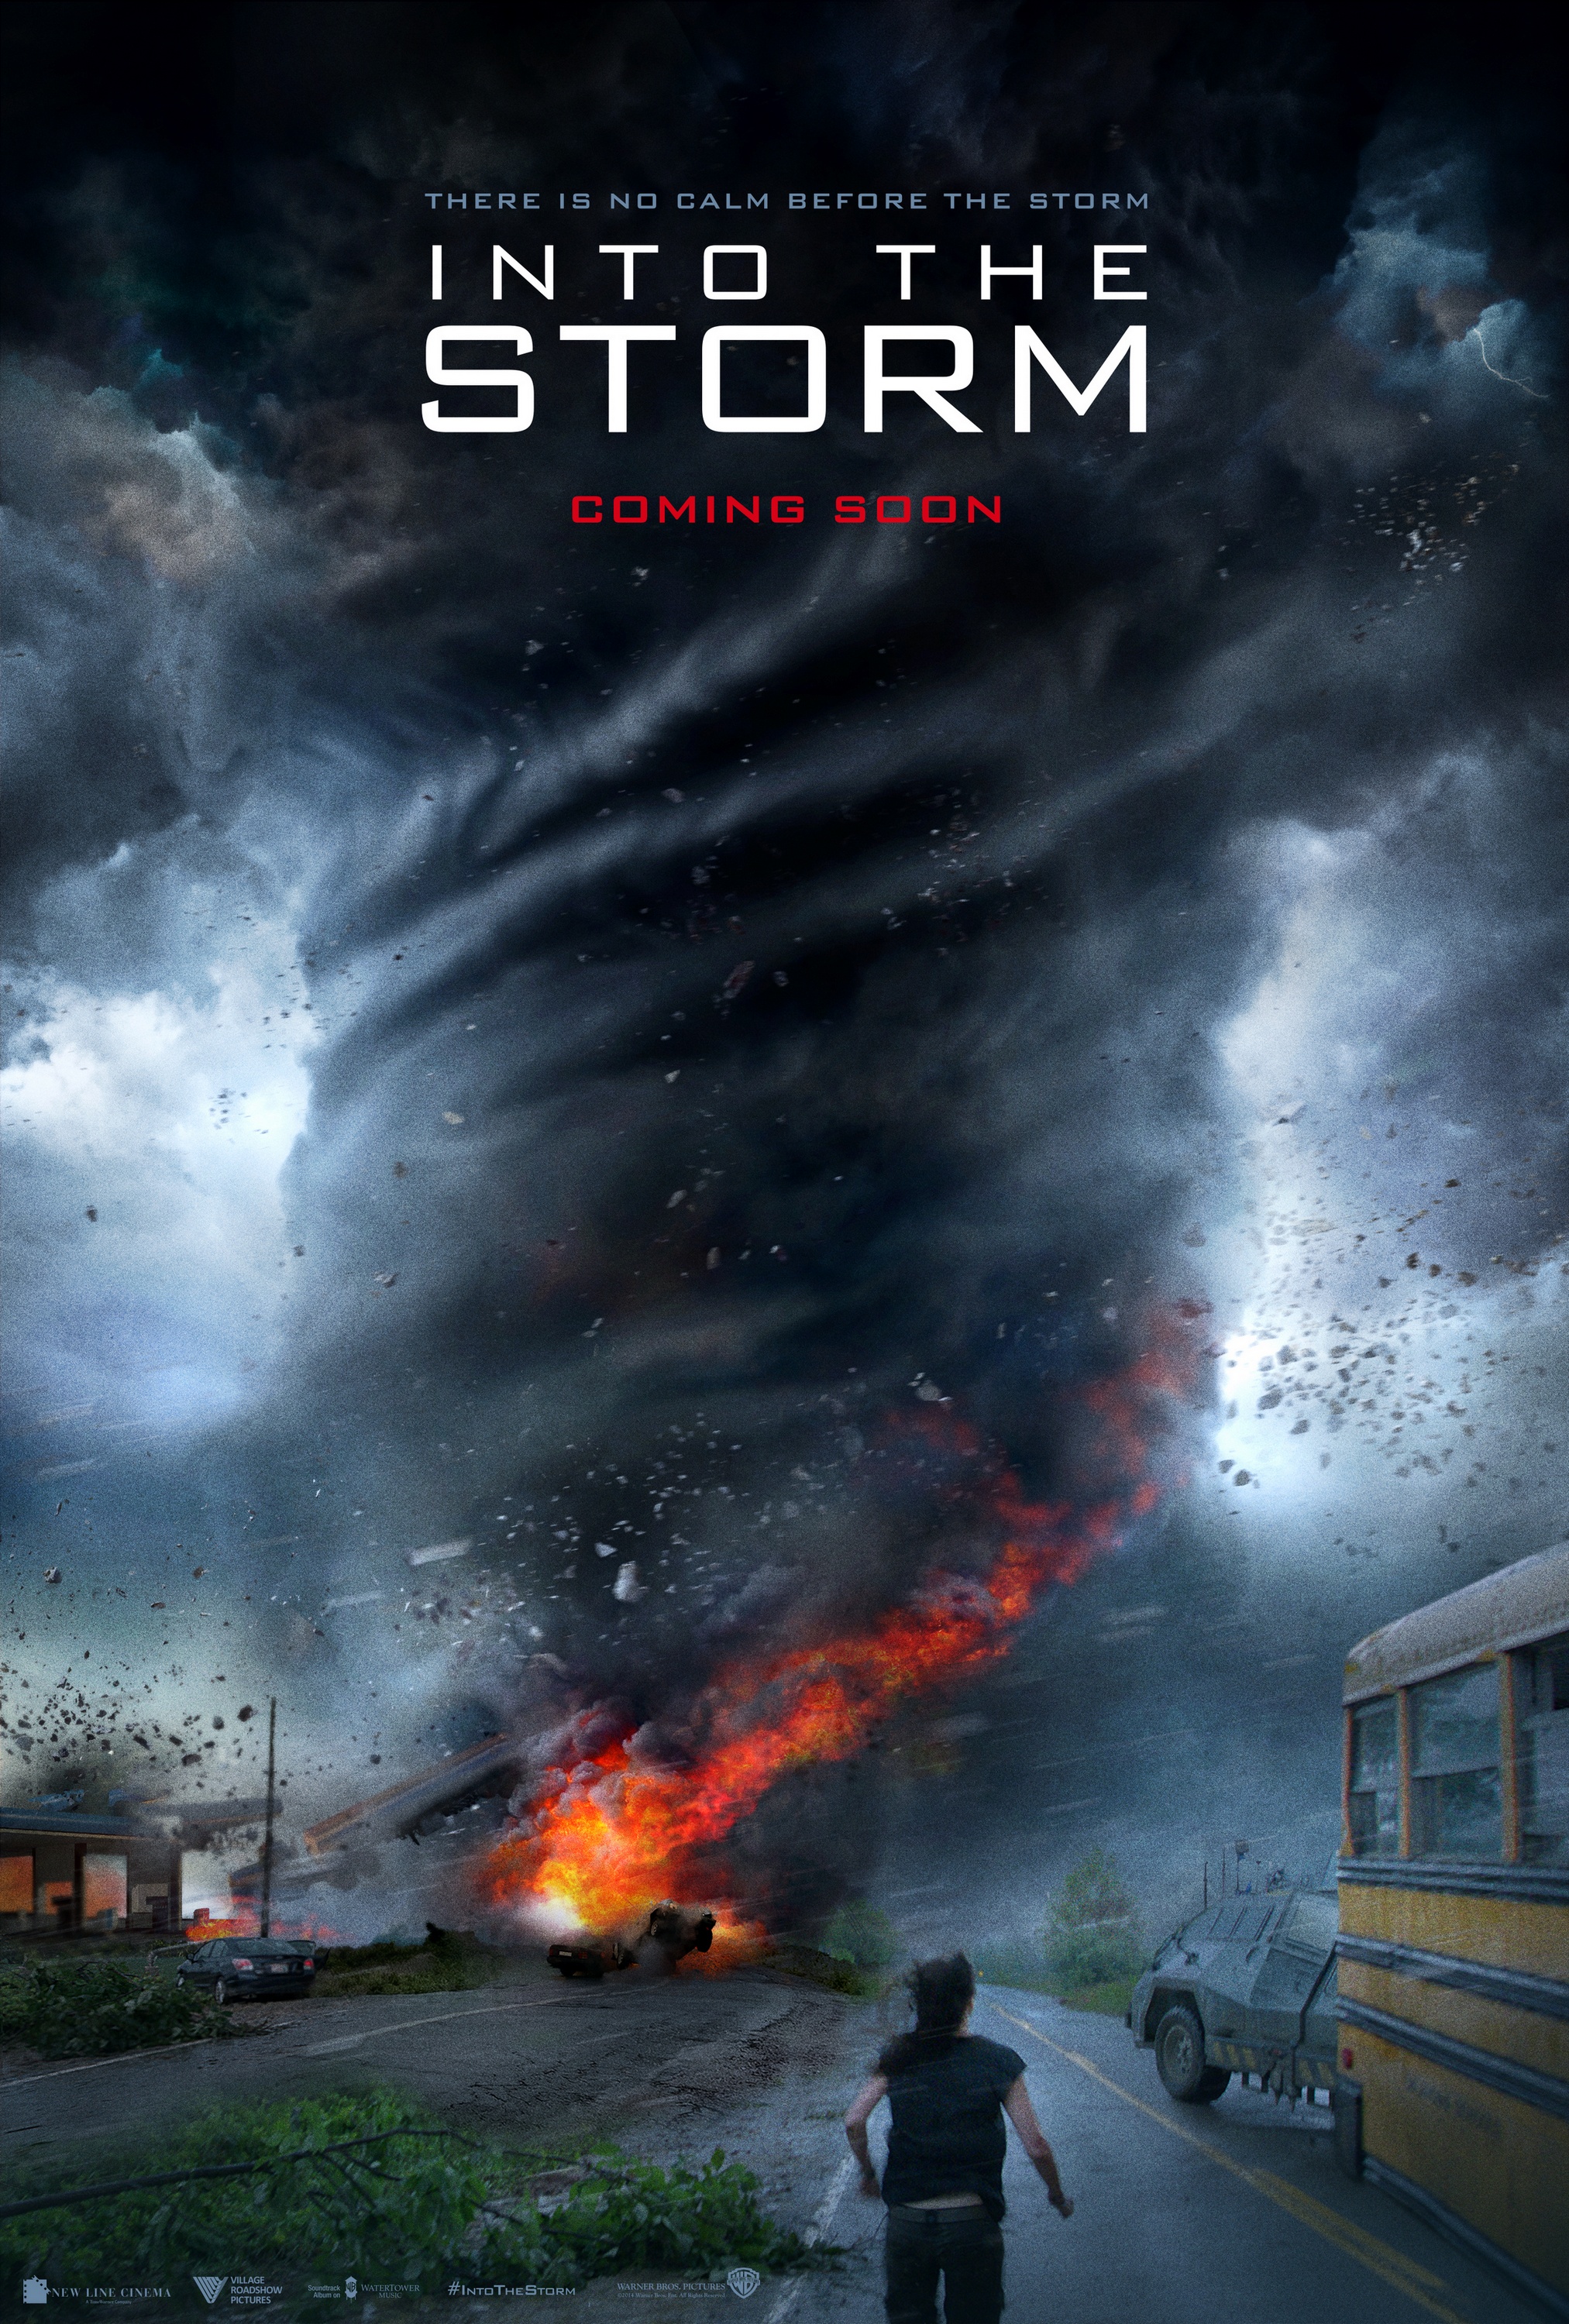 2014年《不惧风暴》特效极其震撼,把龙卷风威力表现得淋淋尽致